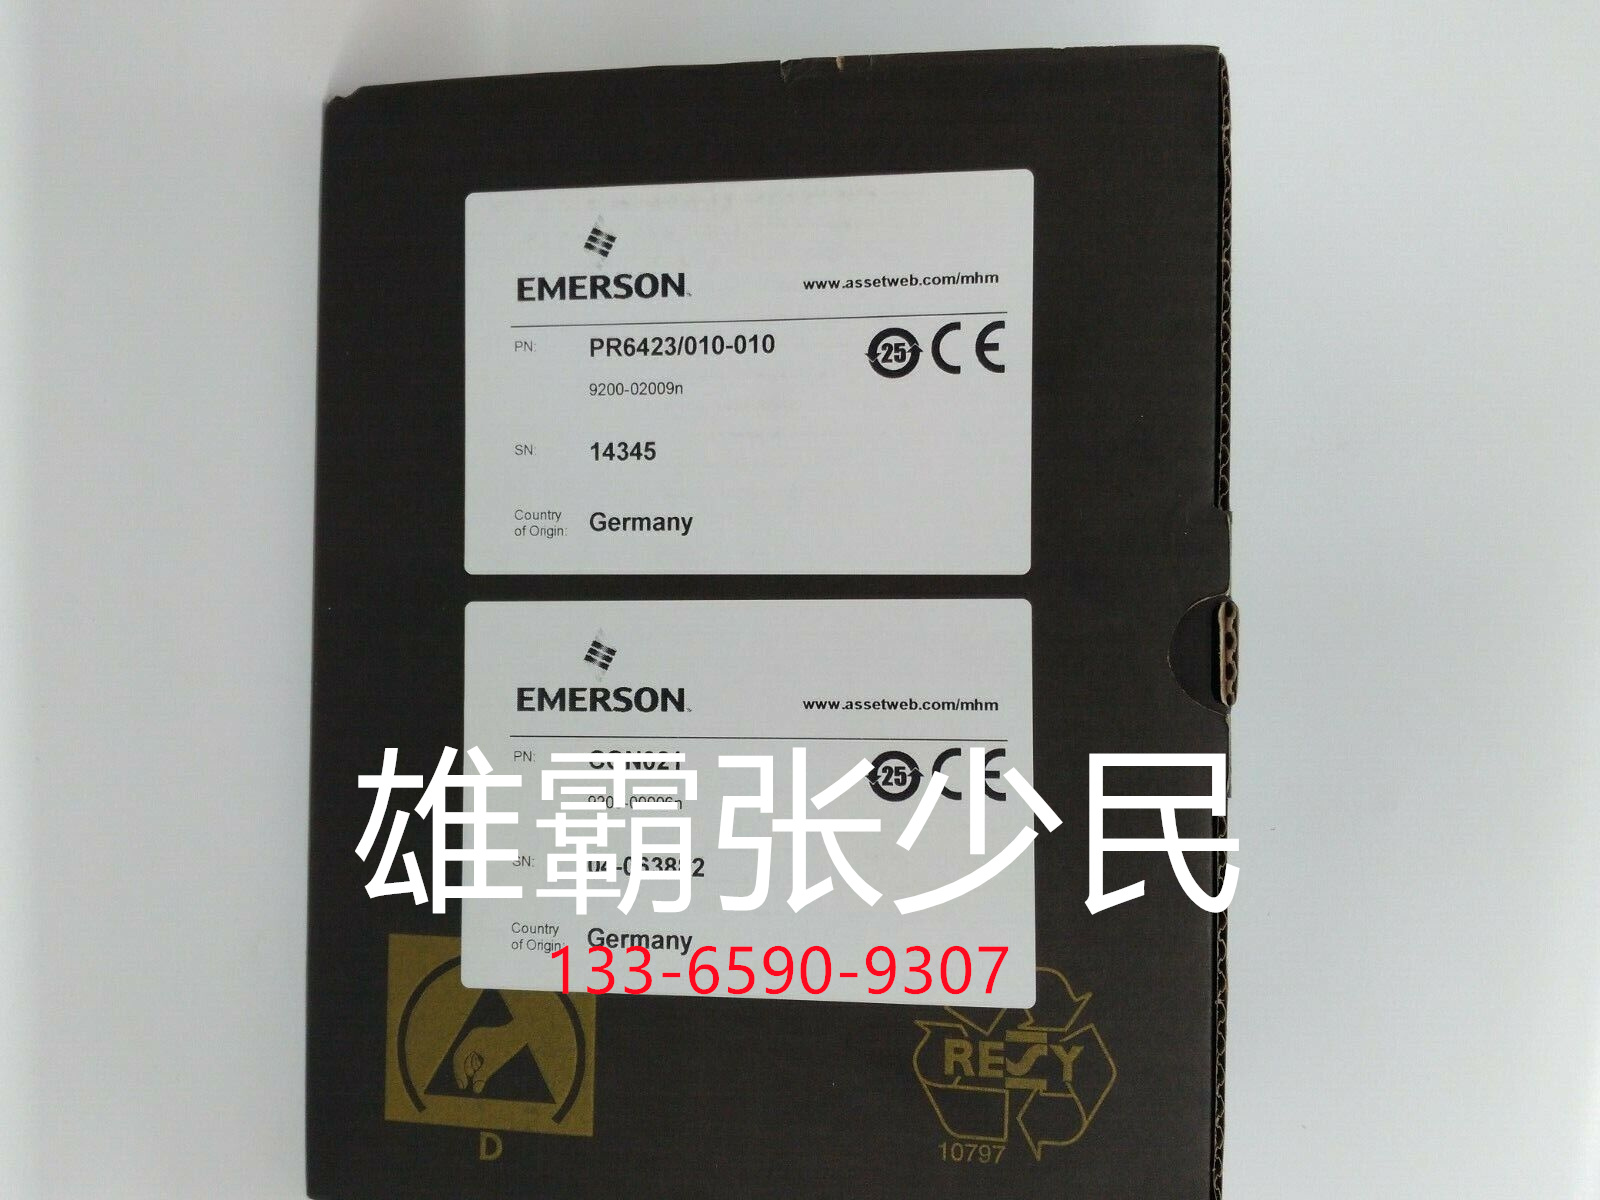 EMERSON EPRO 前置传感器带探头 库存现货CON031+PR6424/000-121 